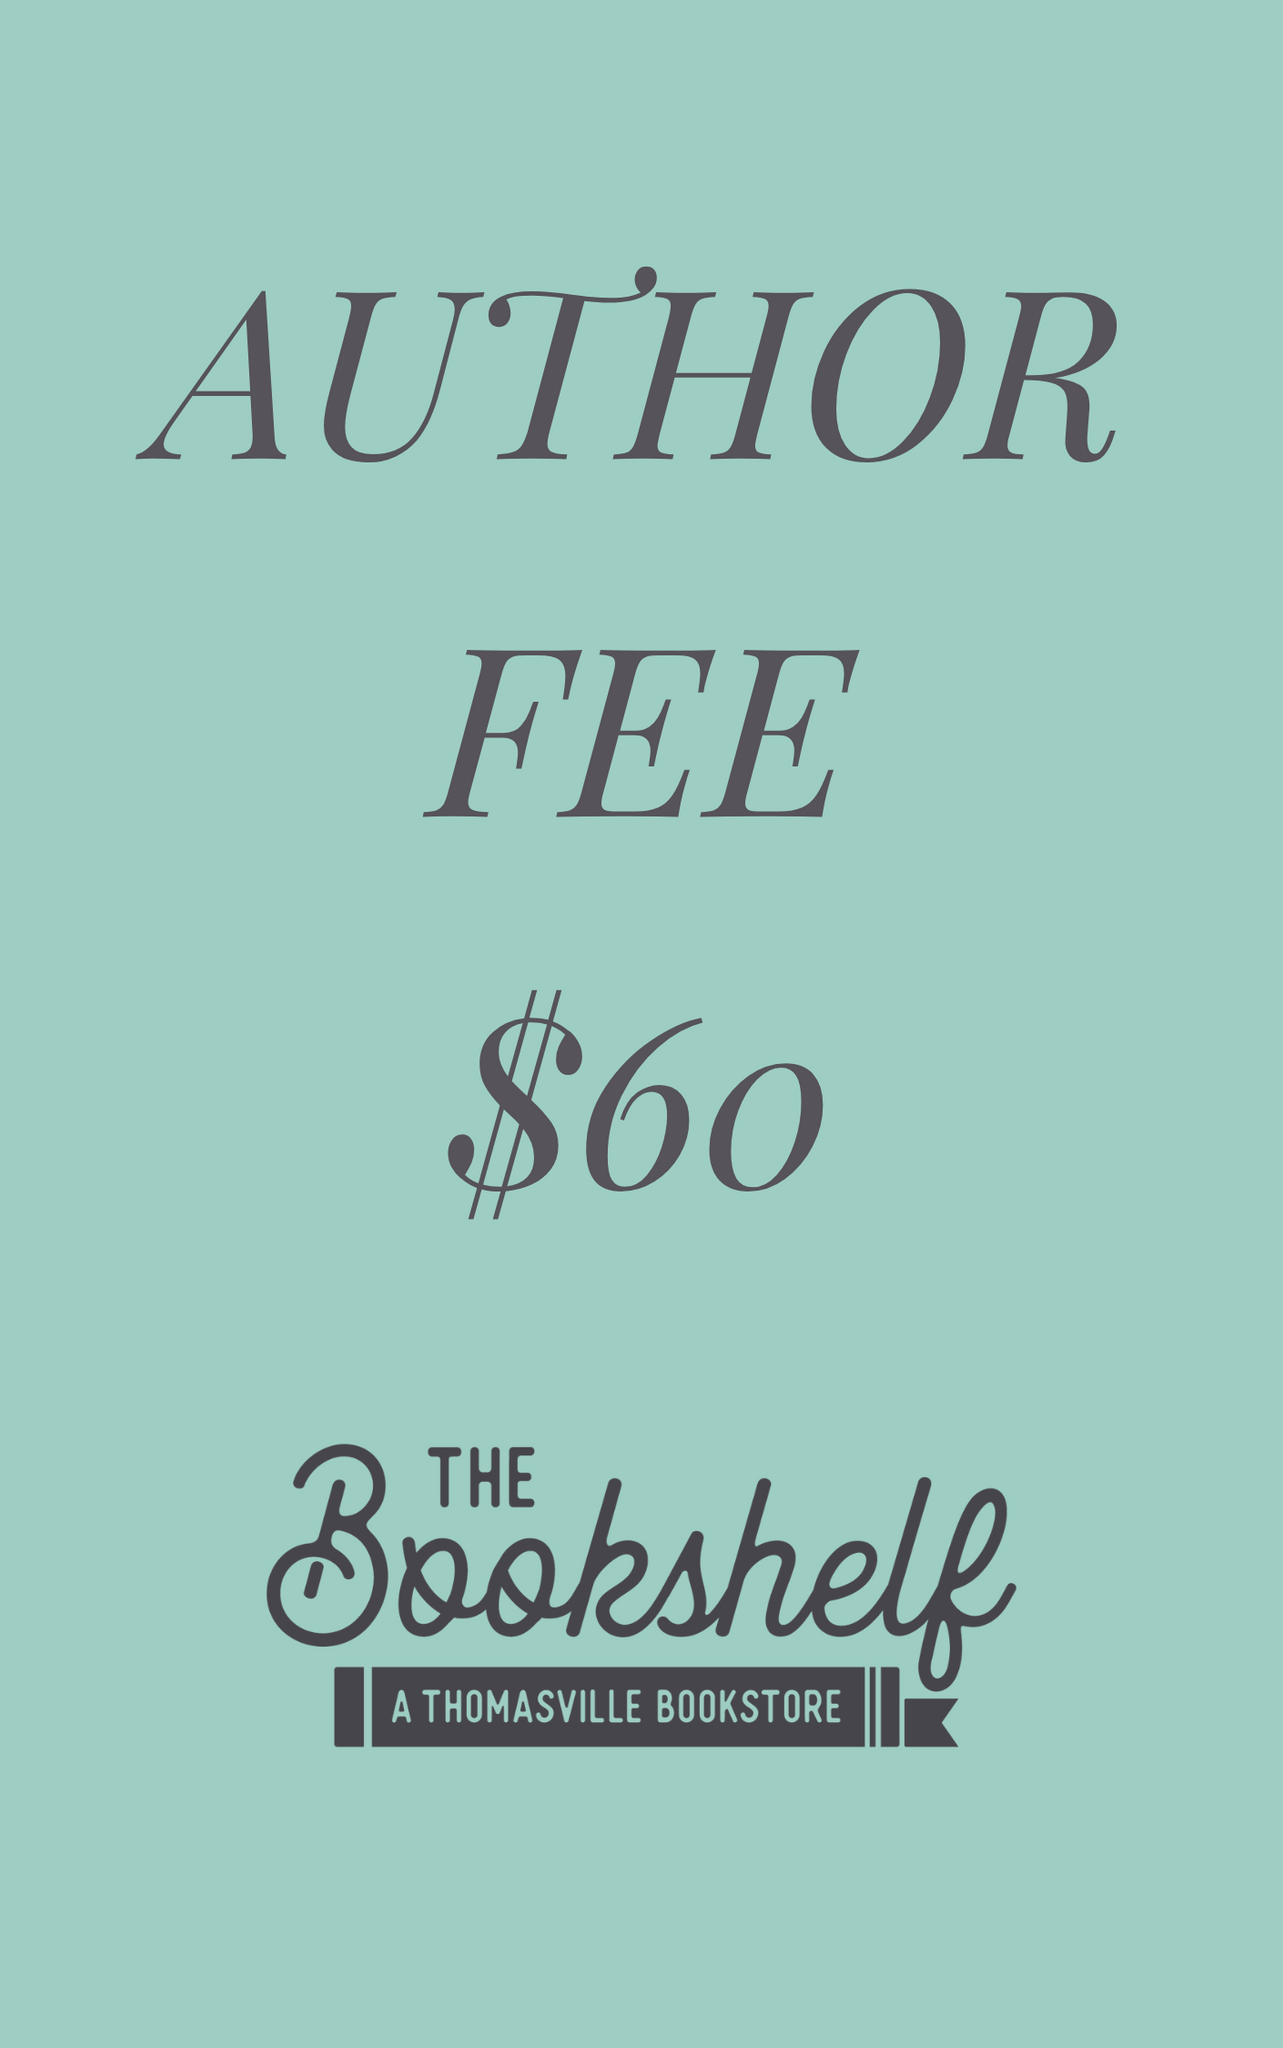 Author Signing Fee - $60